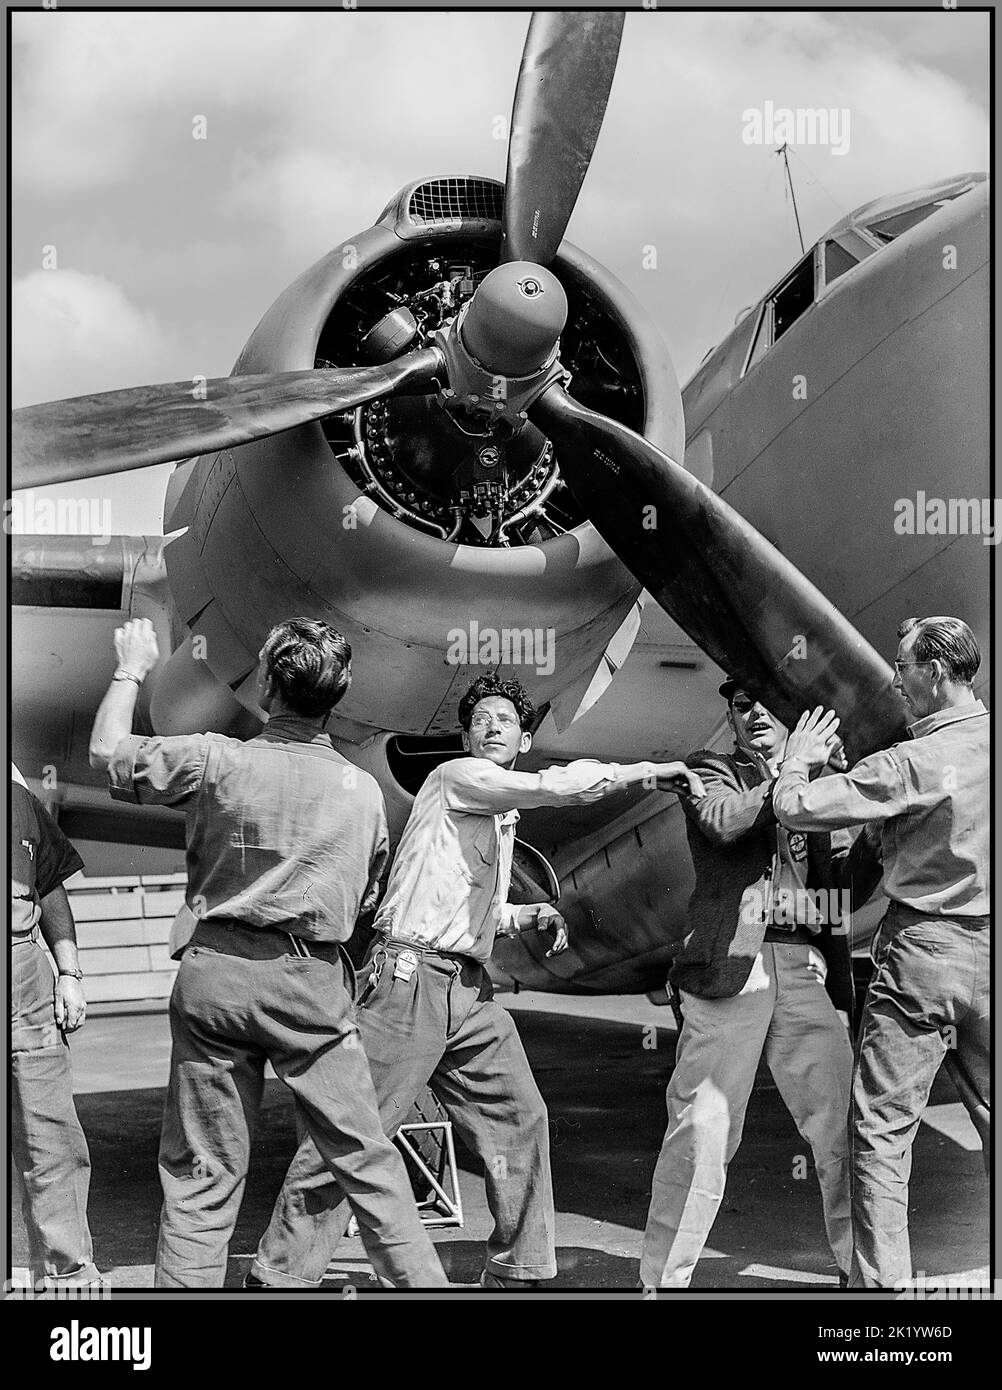 WW2 1943 American Aircrarr production USA contrôle terminé Lockheed Ventura PV-1 bombardier moyen à double moteur à l'usine d'avion Vega, Burbank, Californie Workmen spin Propeller. Amérique États-Unis Seconde Guerre mondiale Banque D'Images